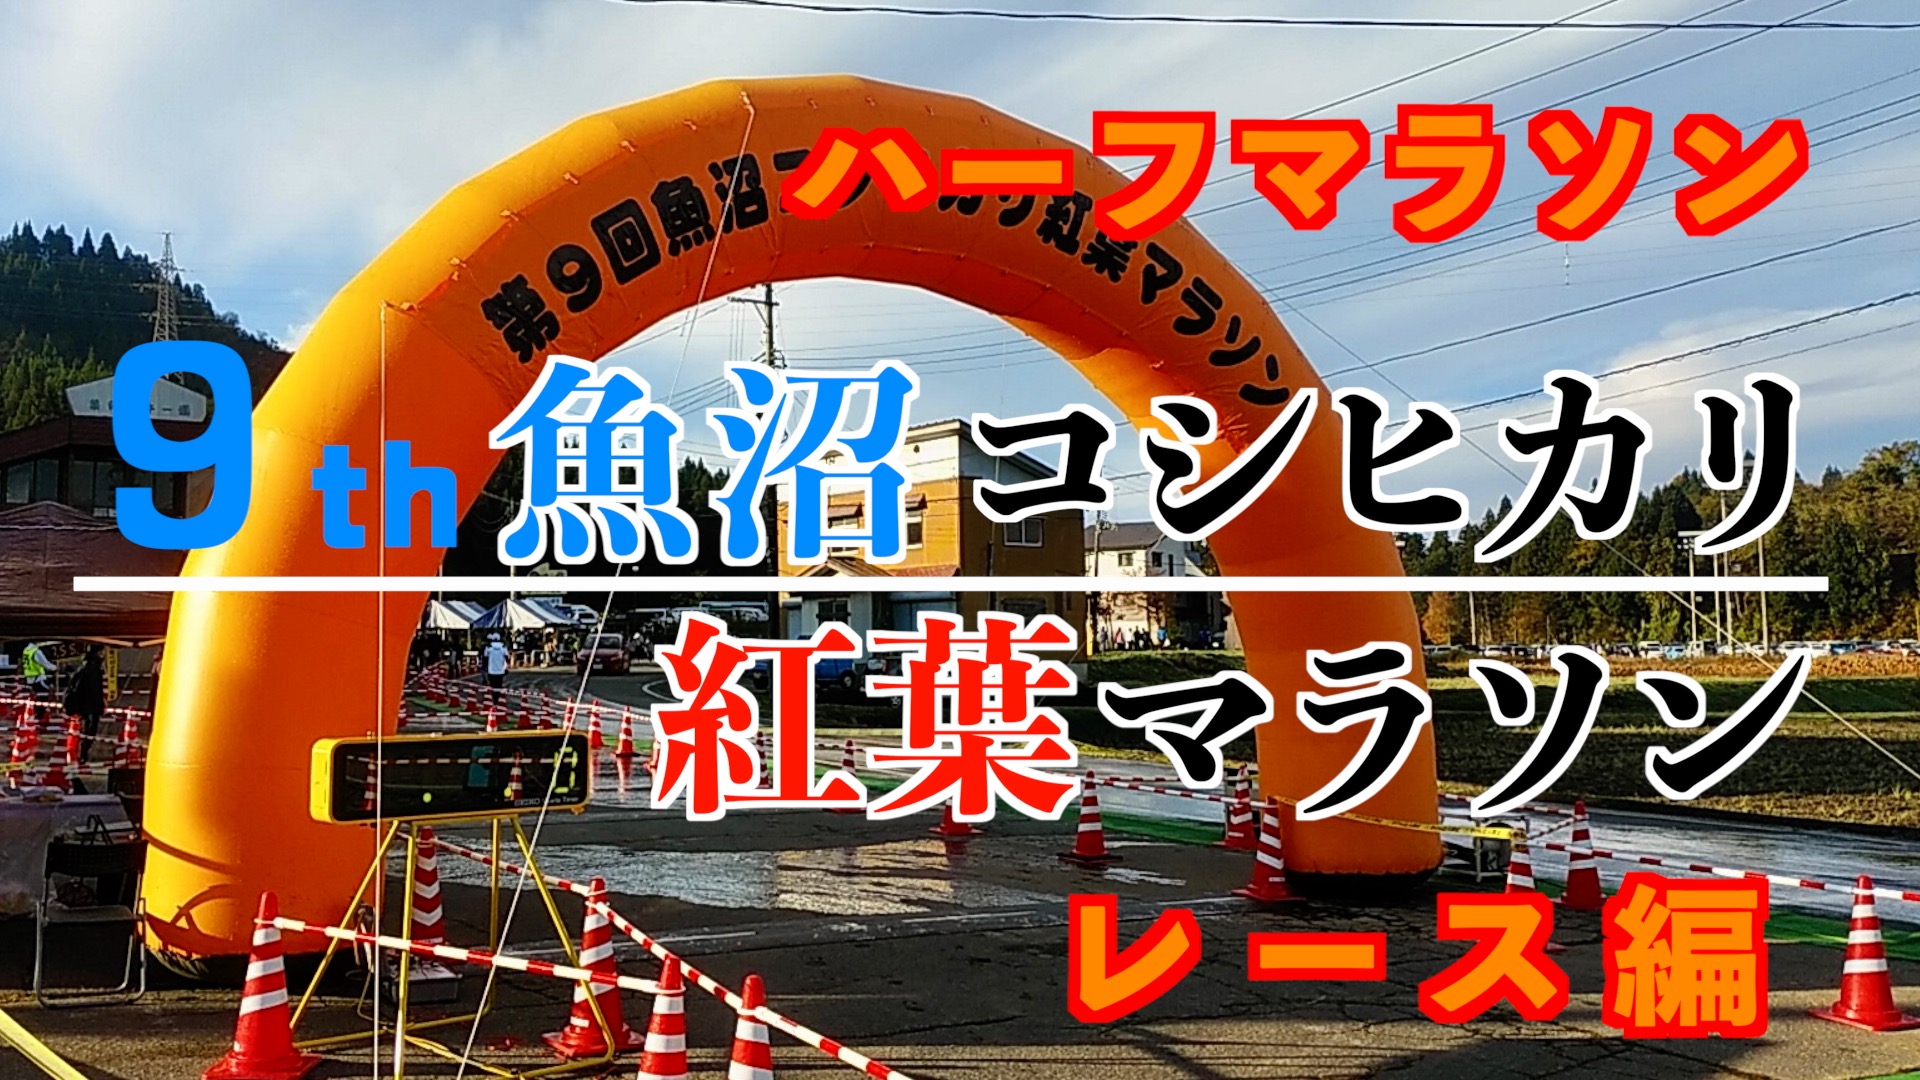 「第9回 魚沼コシヒカリ紅葉マラソン」のレースのアイキャッチ画像